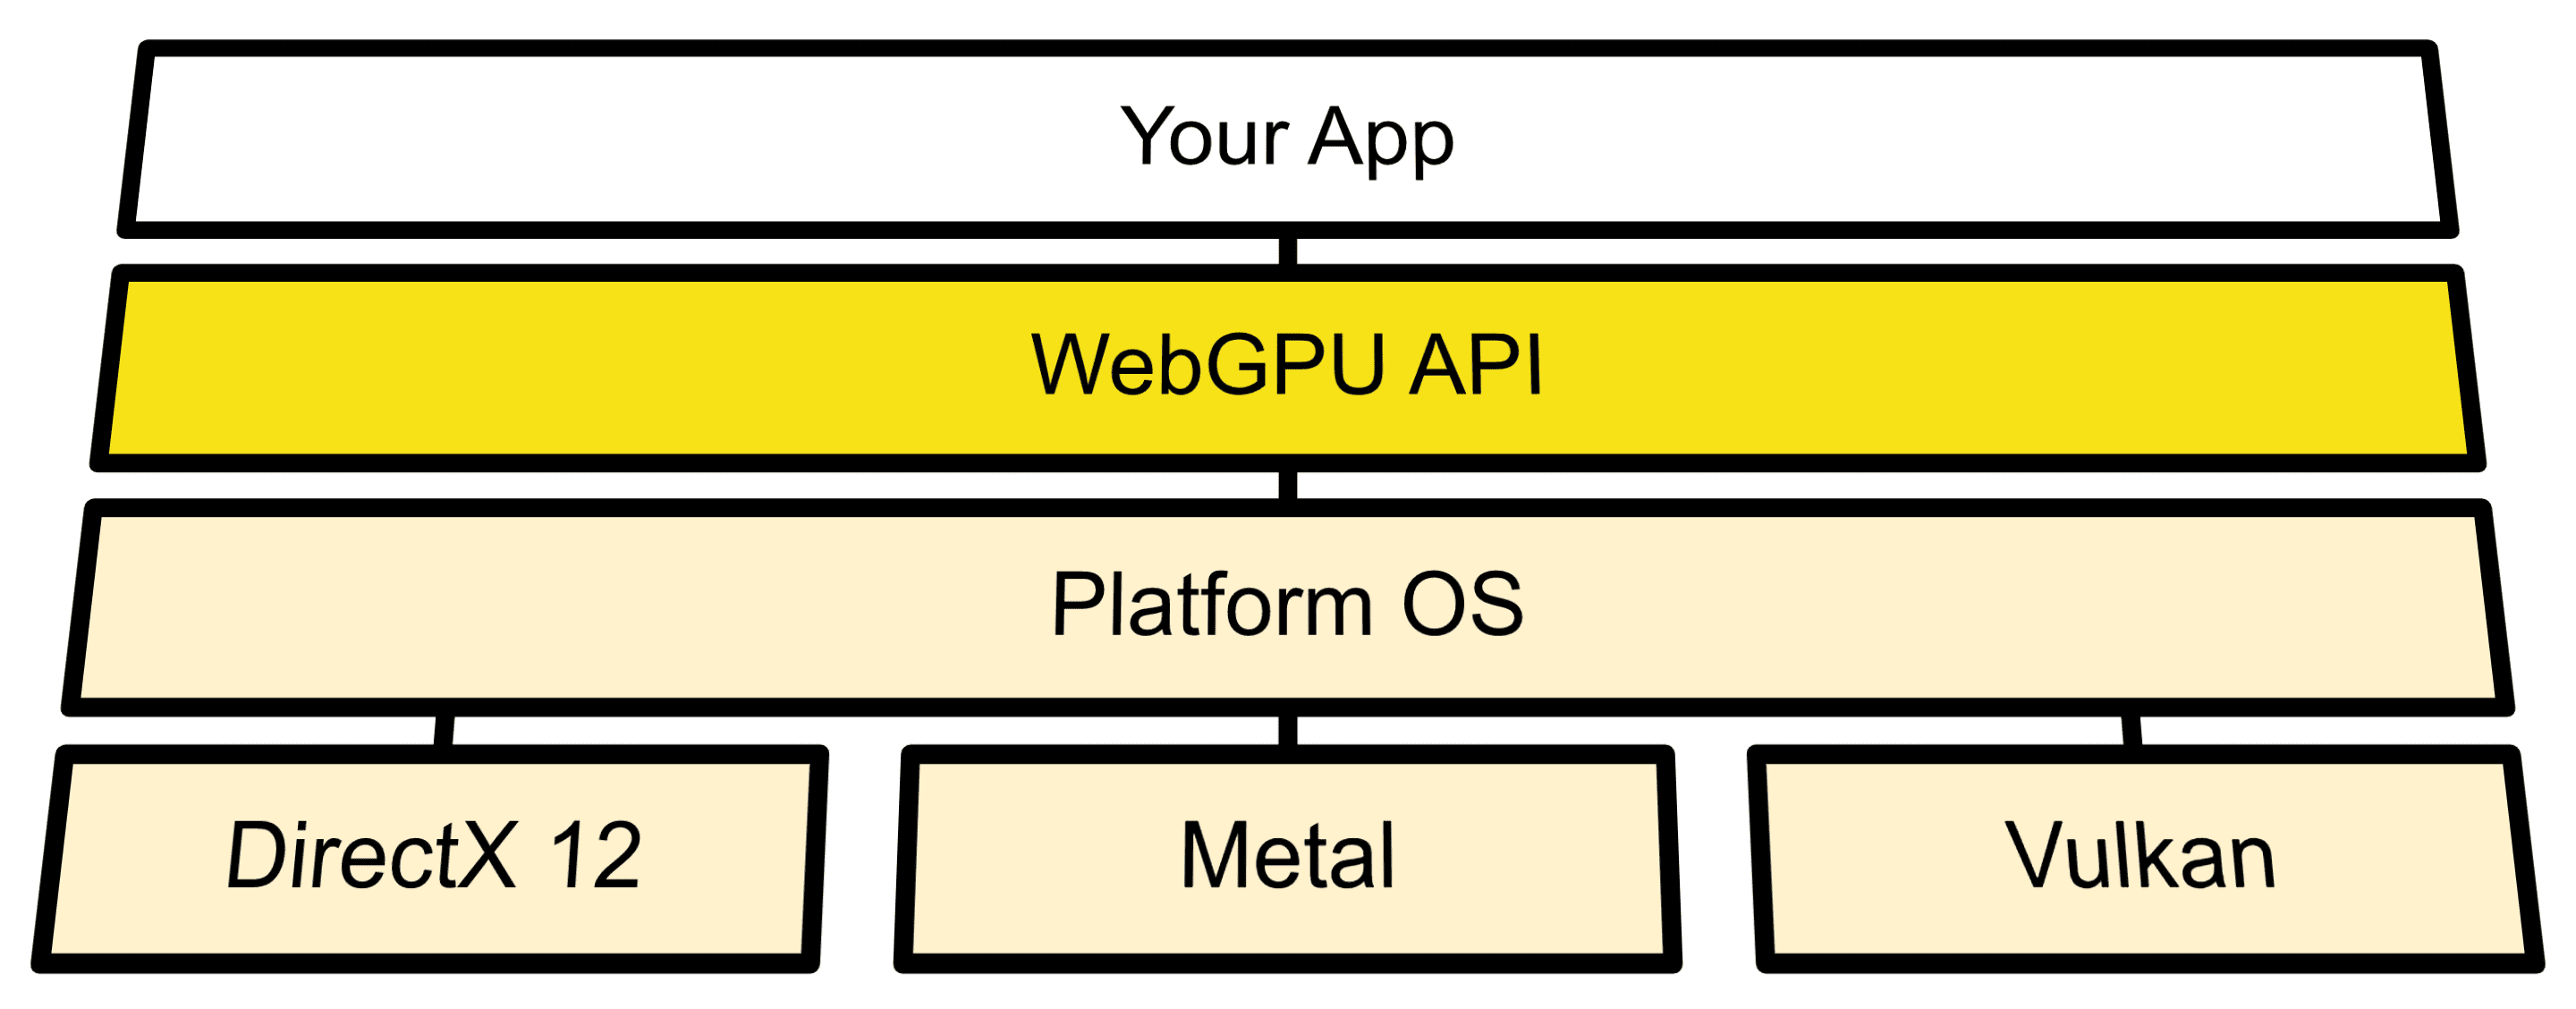 显示 OS API 与 Direct3D 12、Metal 和 Vulkan 之间的 WebGPU 连接的架构图。